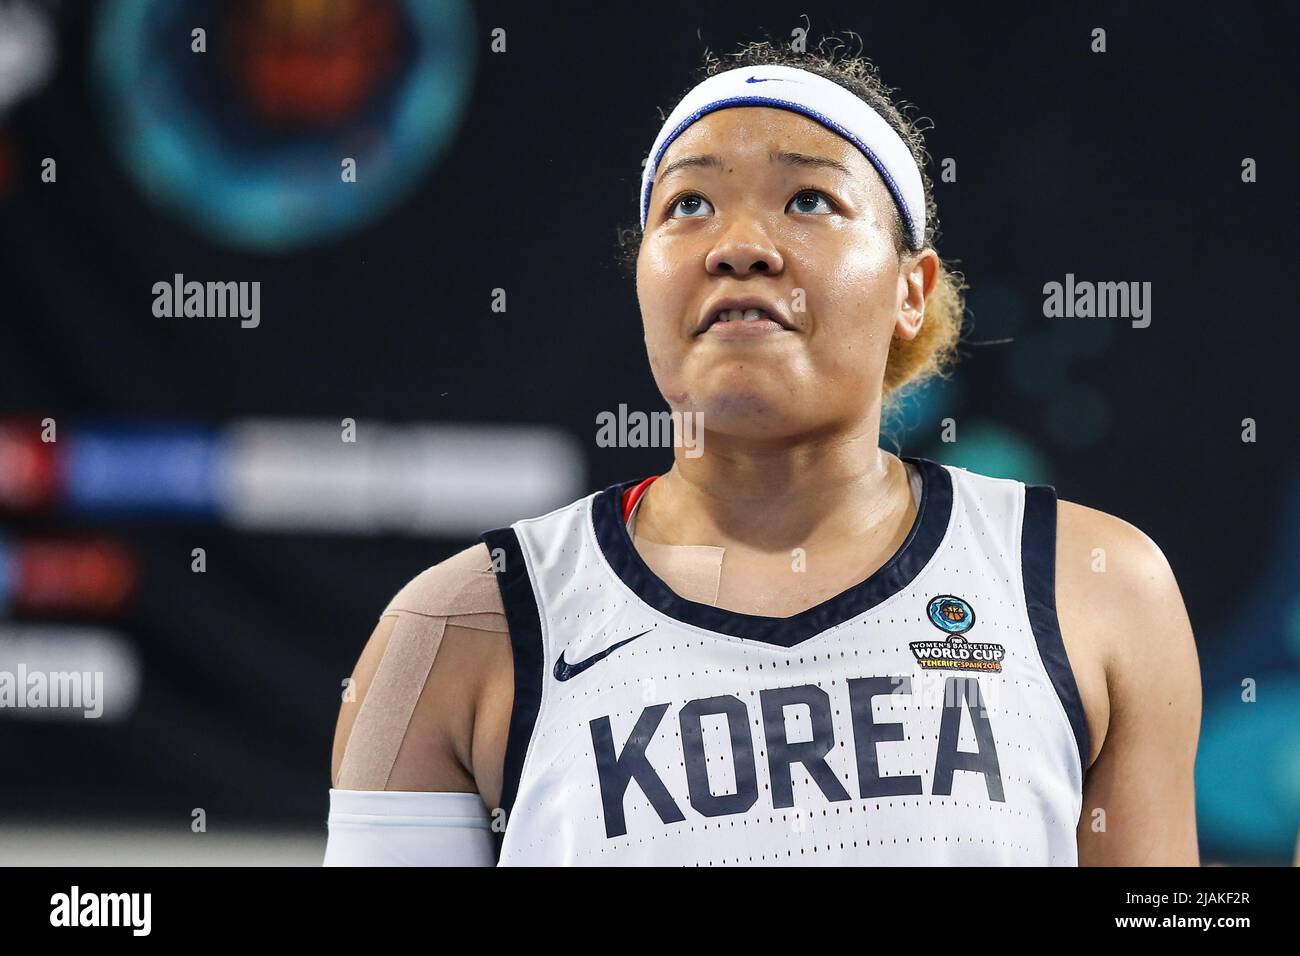 Espagne, Ténérife, 25 septembre 2018: Joueur de basket-ball coréen Han Byul Kim lors de la coupe du monde de basket-ball féminin de la FIBA en Espagne. Banque D'Images